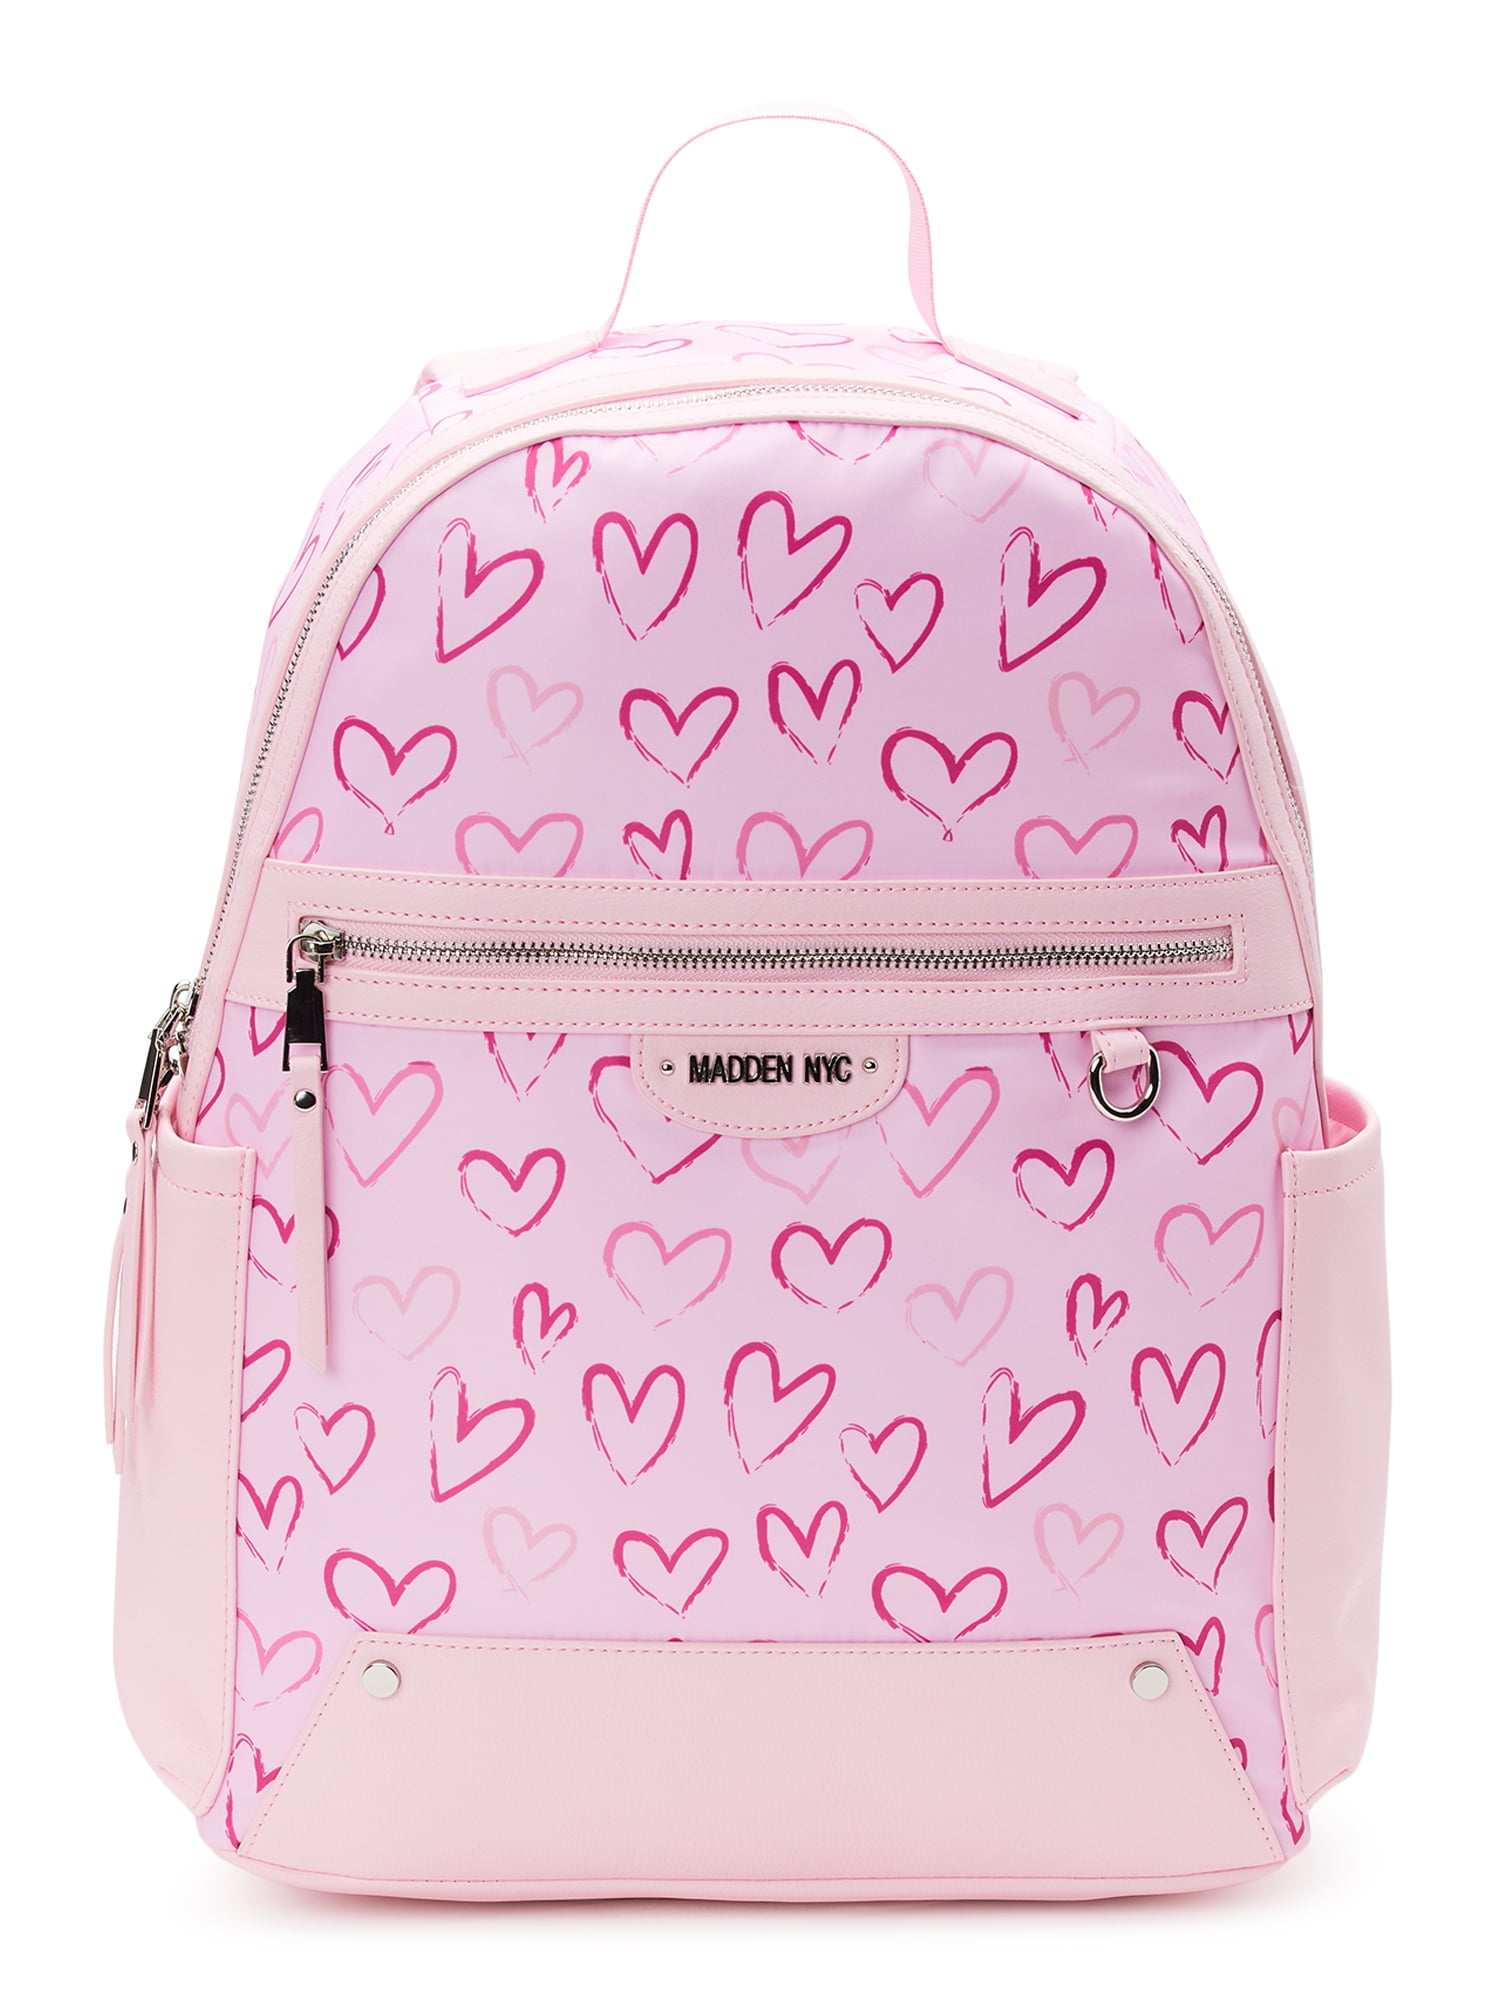 me + pink = 4life 🎀 #♡ #thecolorpink #coquette #lanadelrey #justagirl, School Supplies